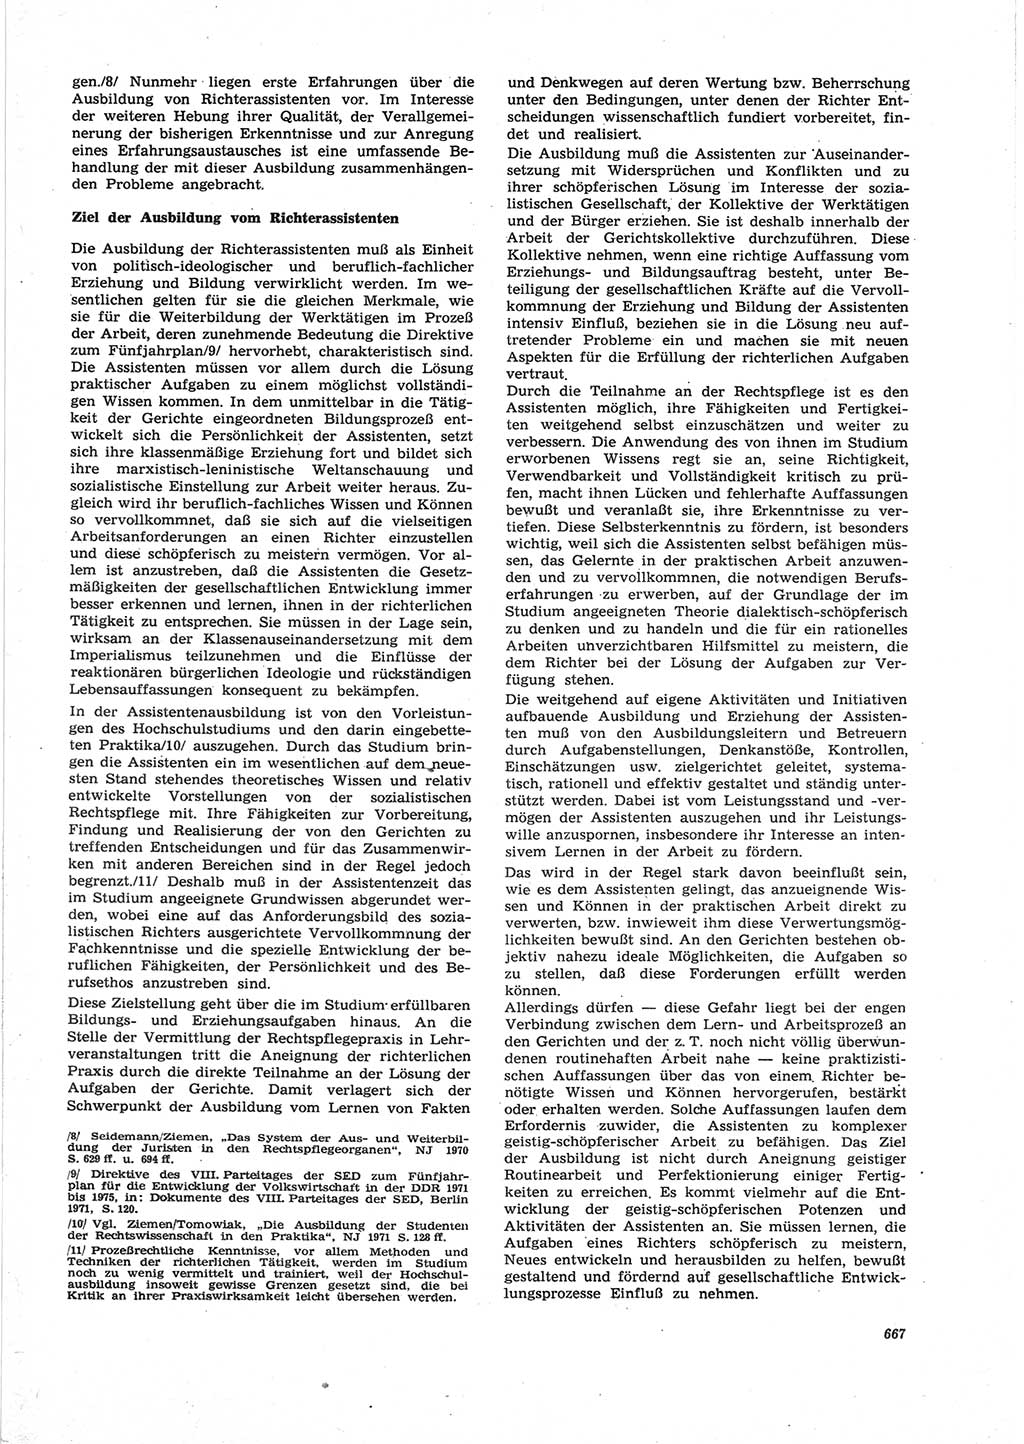 Neue Justiz (NJ), Zeitschrift für Recht und Rechtswissenschaft [Deutsche Demokratische Republik (DDR)], 25. Jahrgang 1971, Seite 667 (NJ DDR 1971, S. 667)